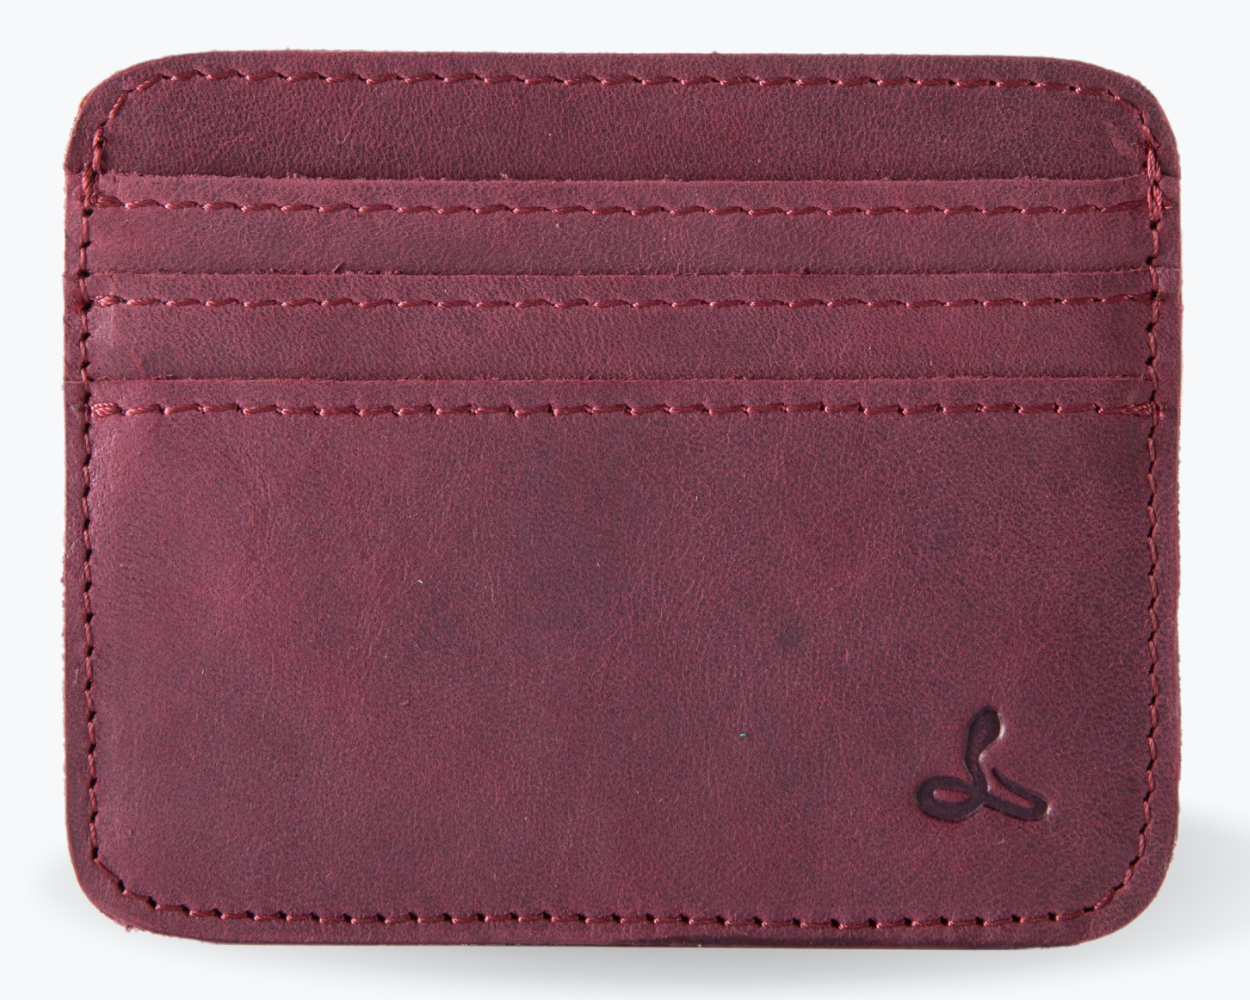 Vintage Leather Cardholder